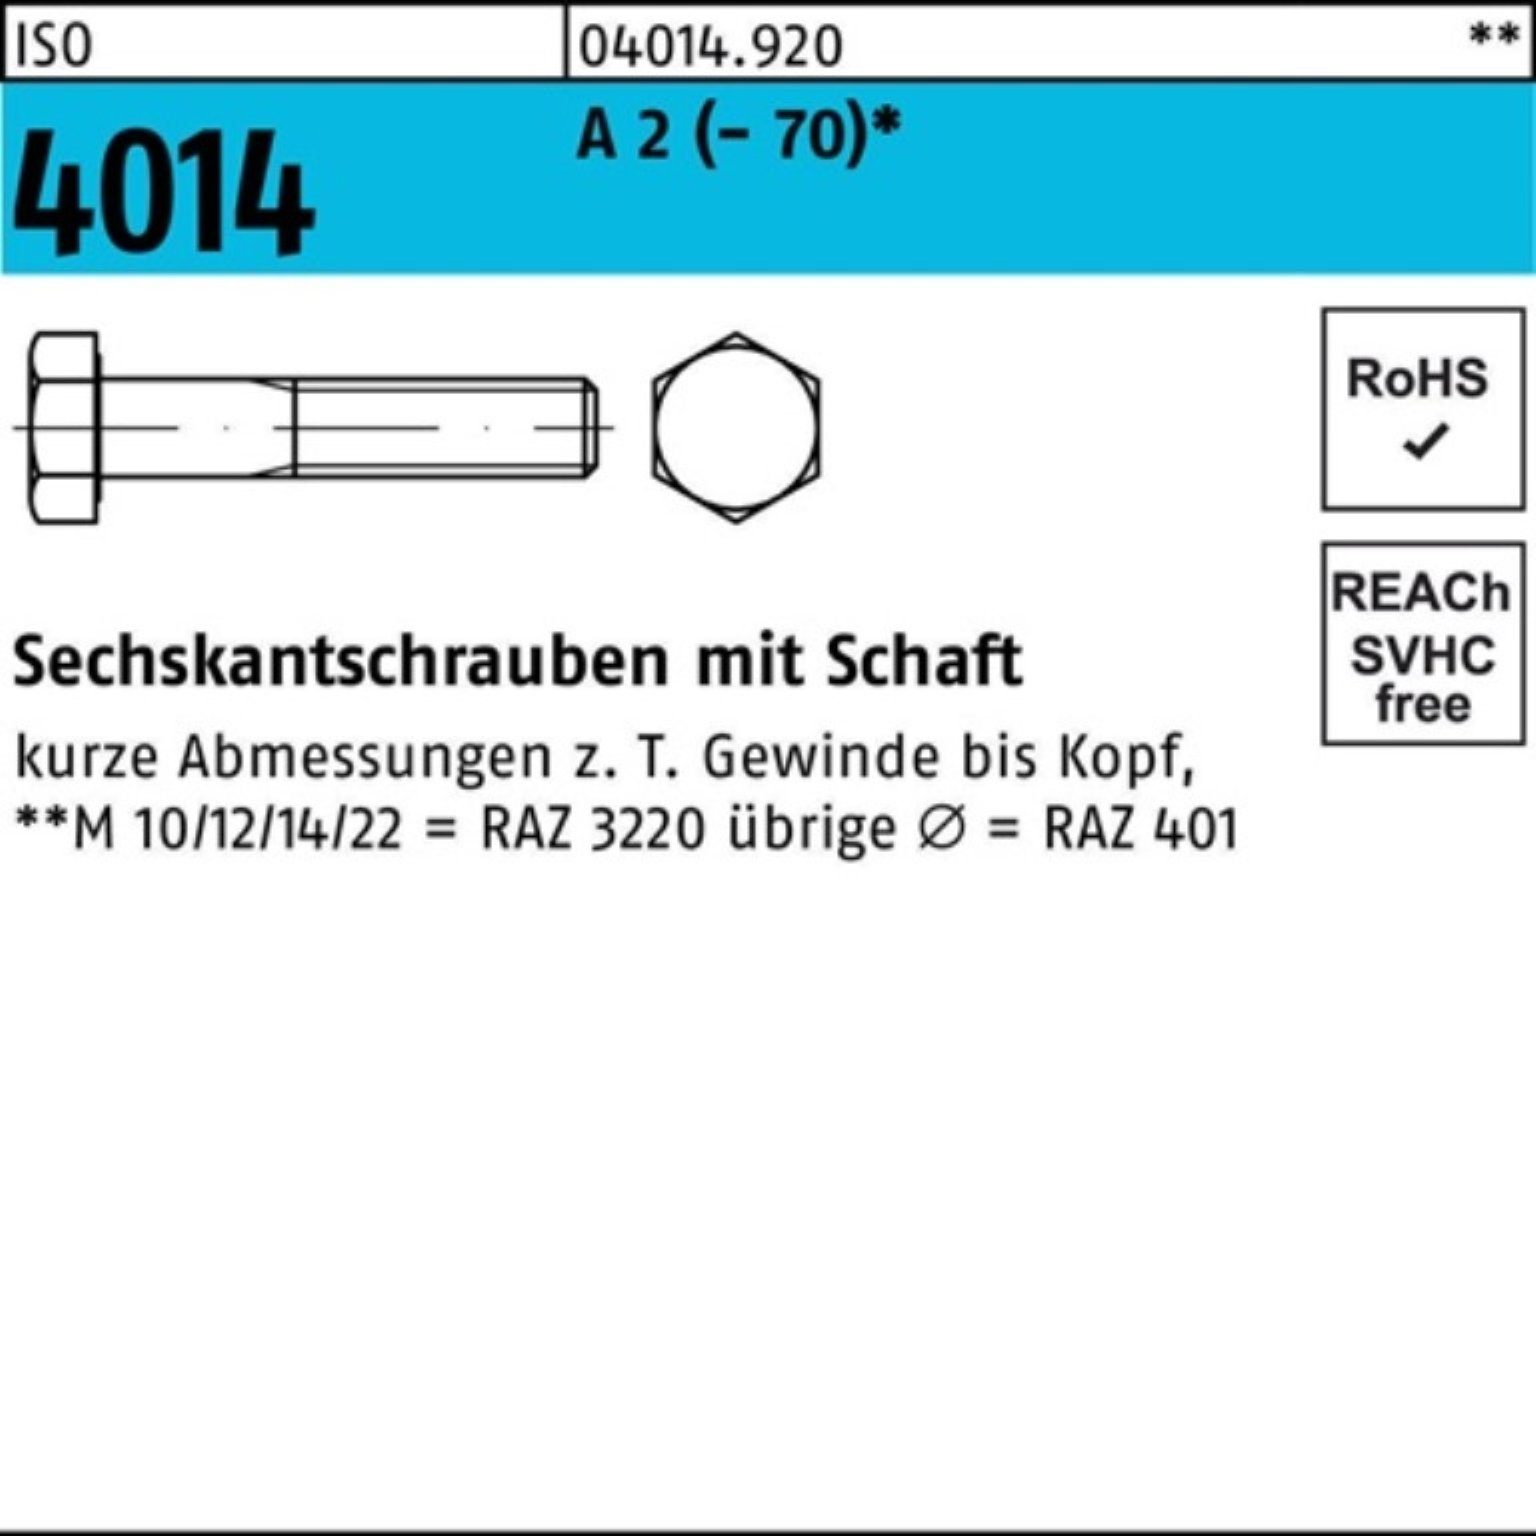 Bufab Sechskantschraube 100er Pack Sechskantschraube ISO 4014 Schaft M5x 80 A 2 (70) 100 St